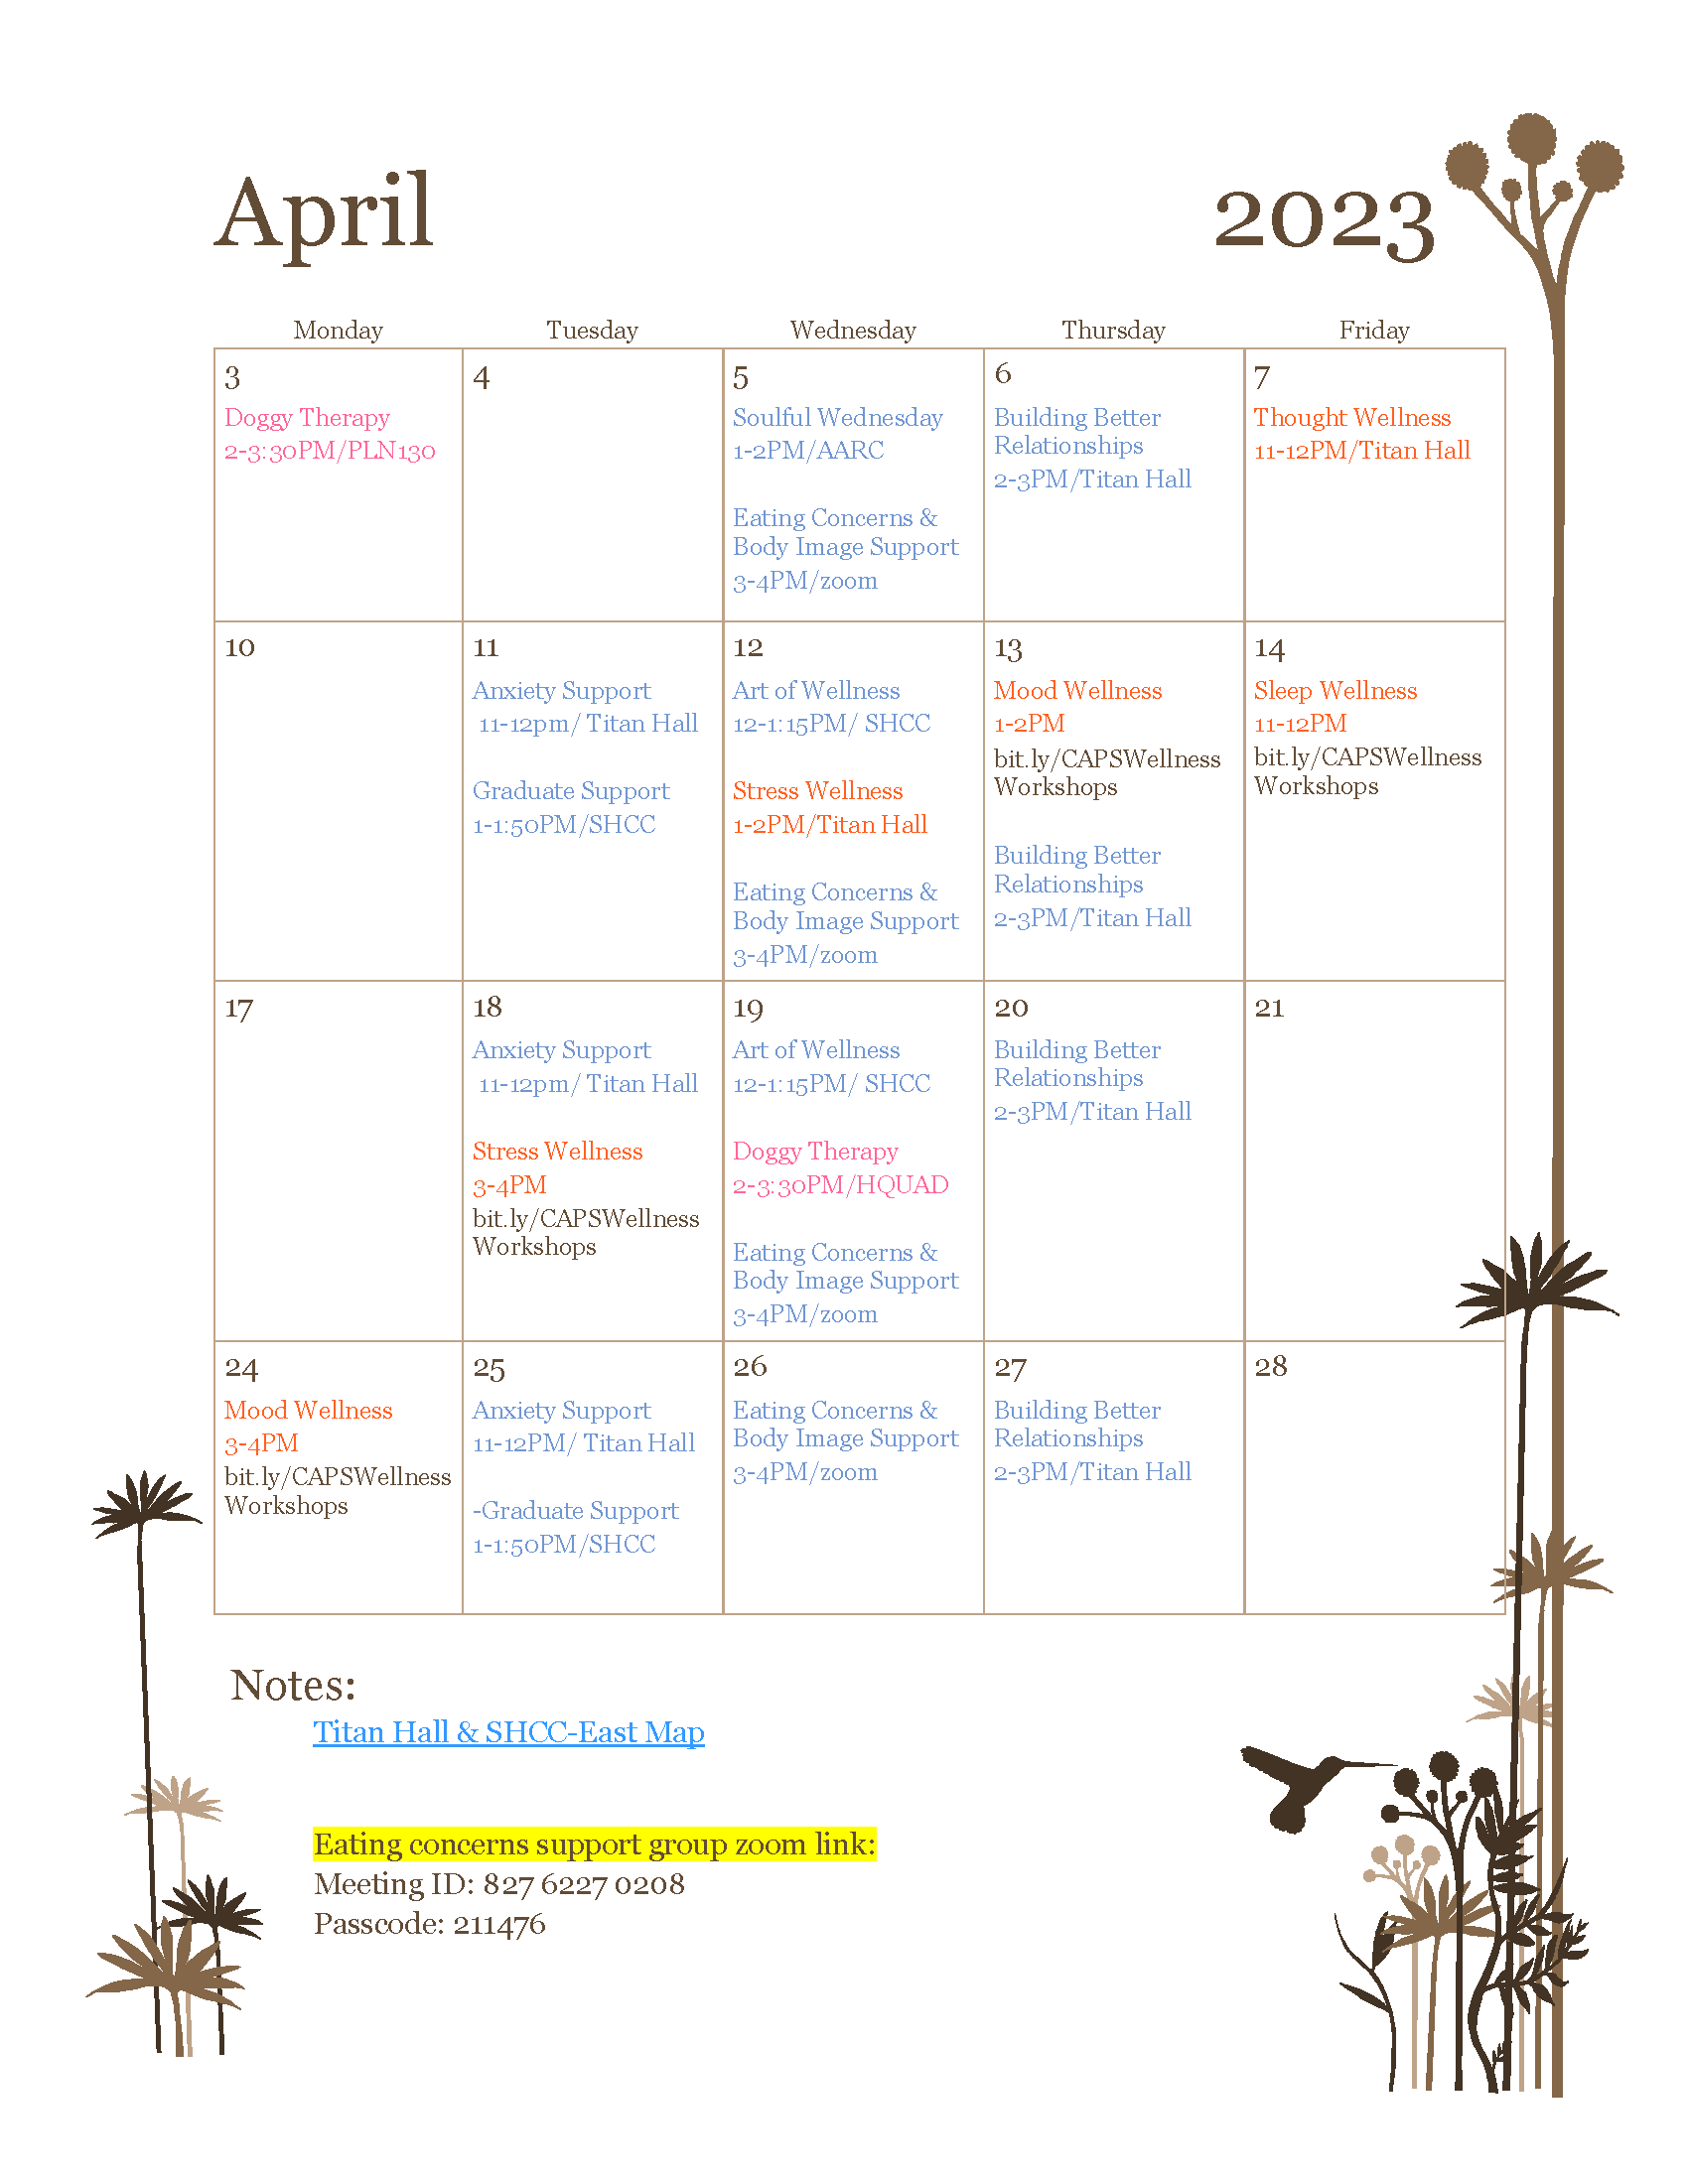 April 2023 Calendar of Events